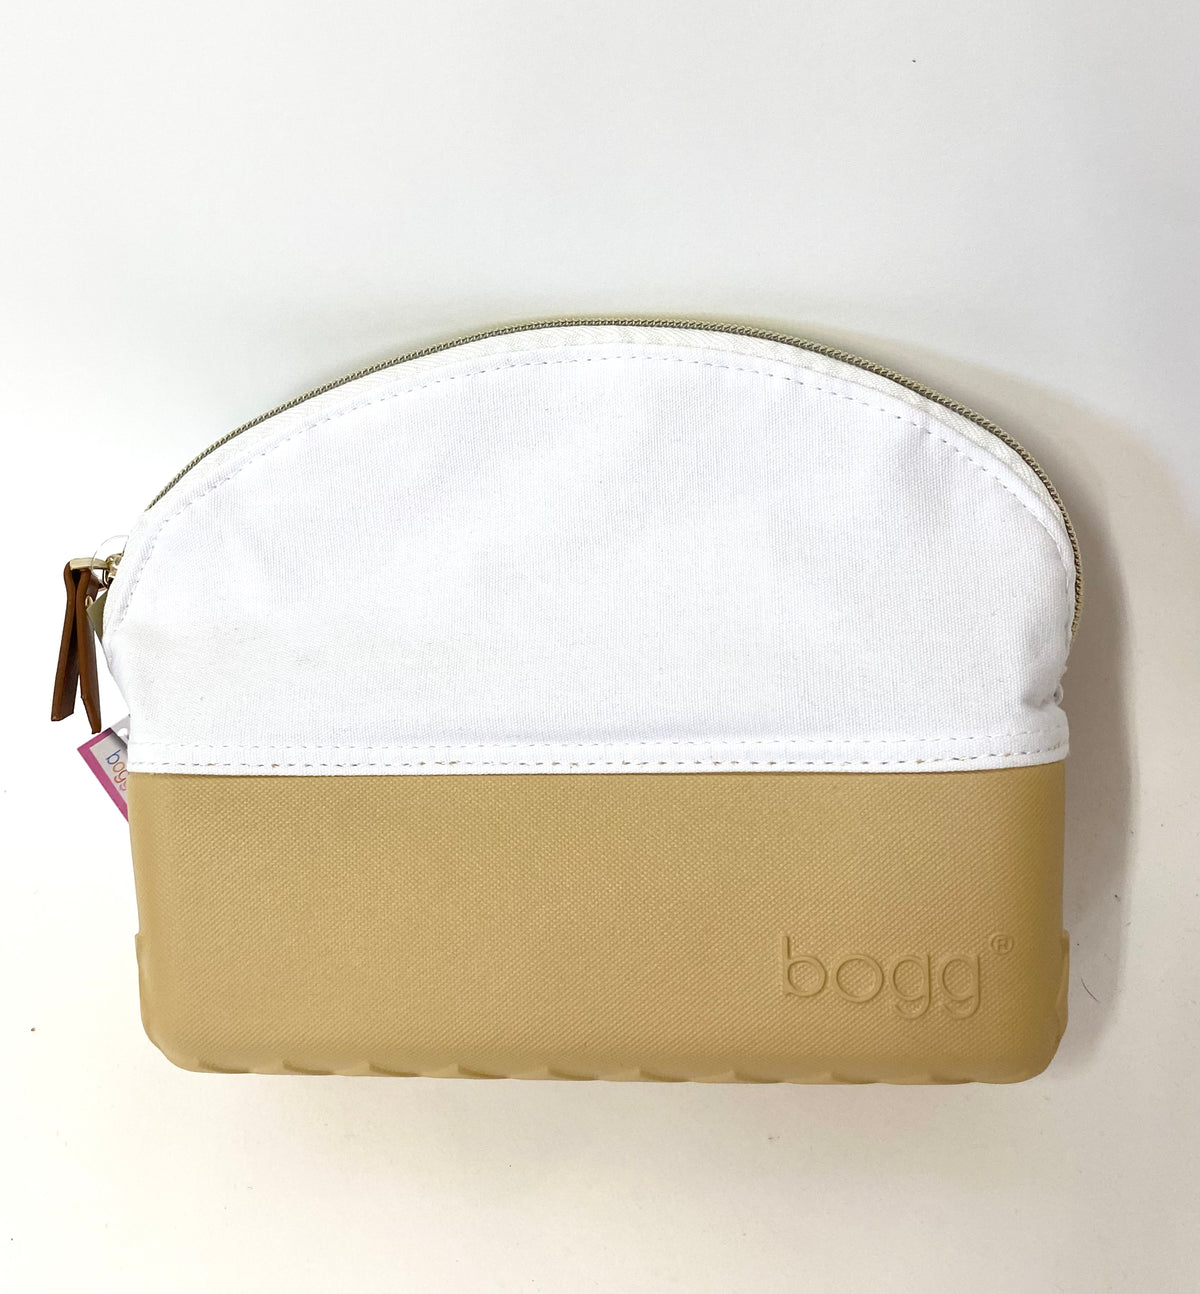 Beauty Bogg Bag - Fogg